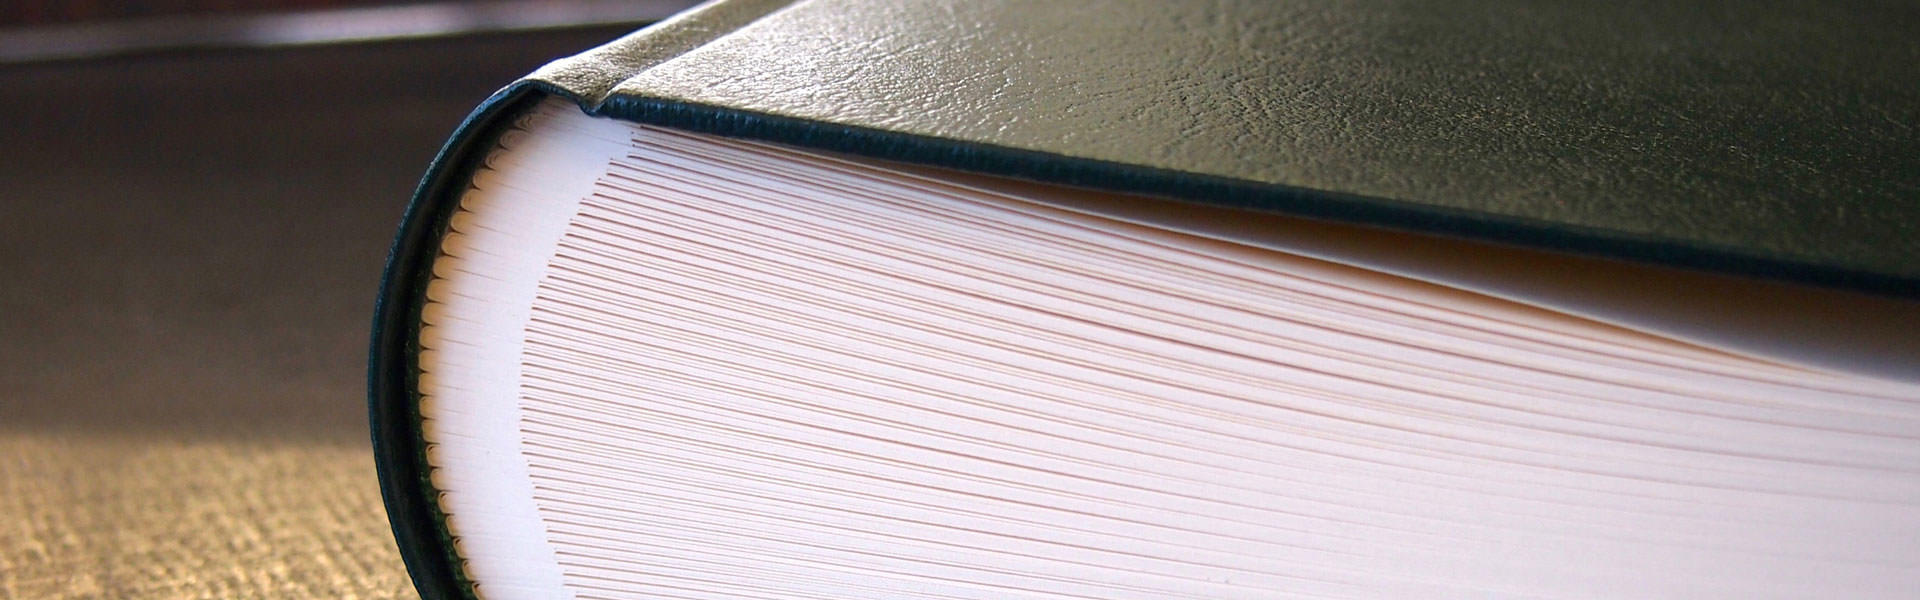 Gästebuch mit Ausgleichfälzen - Buchbinderei Papierhandwerk